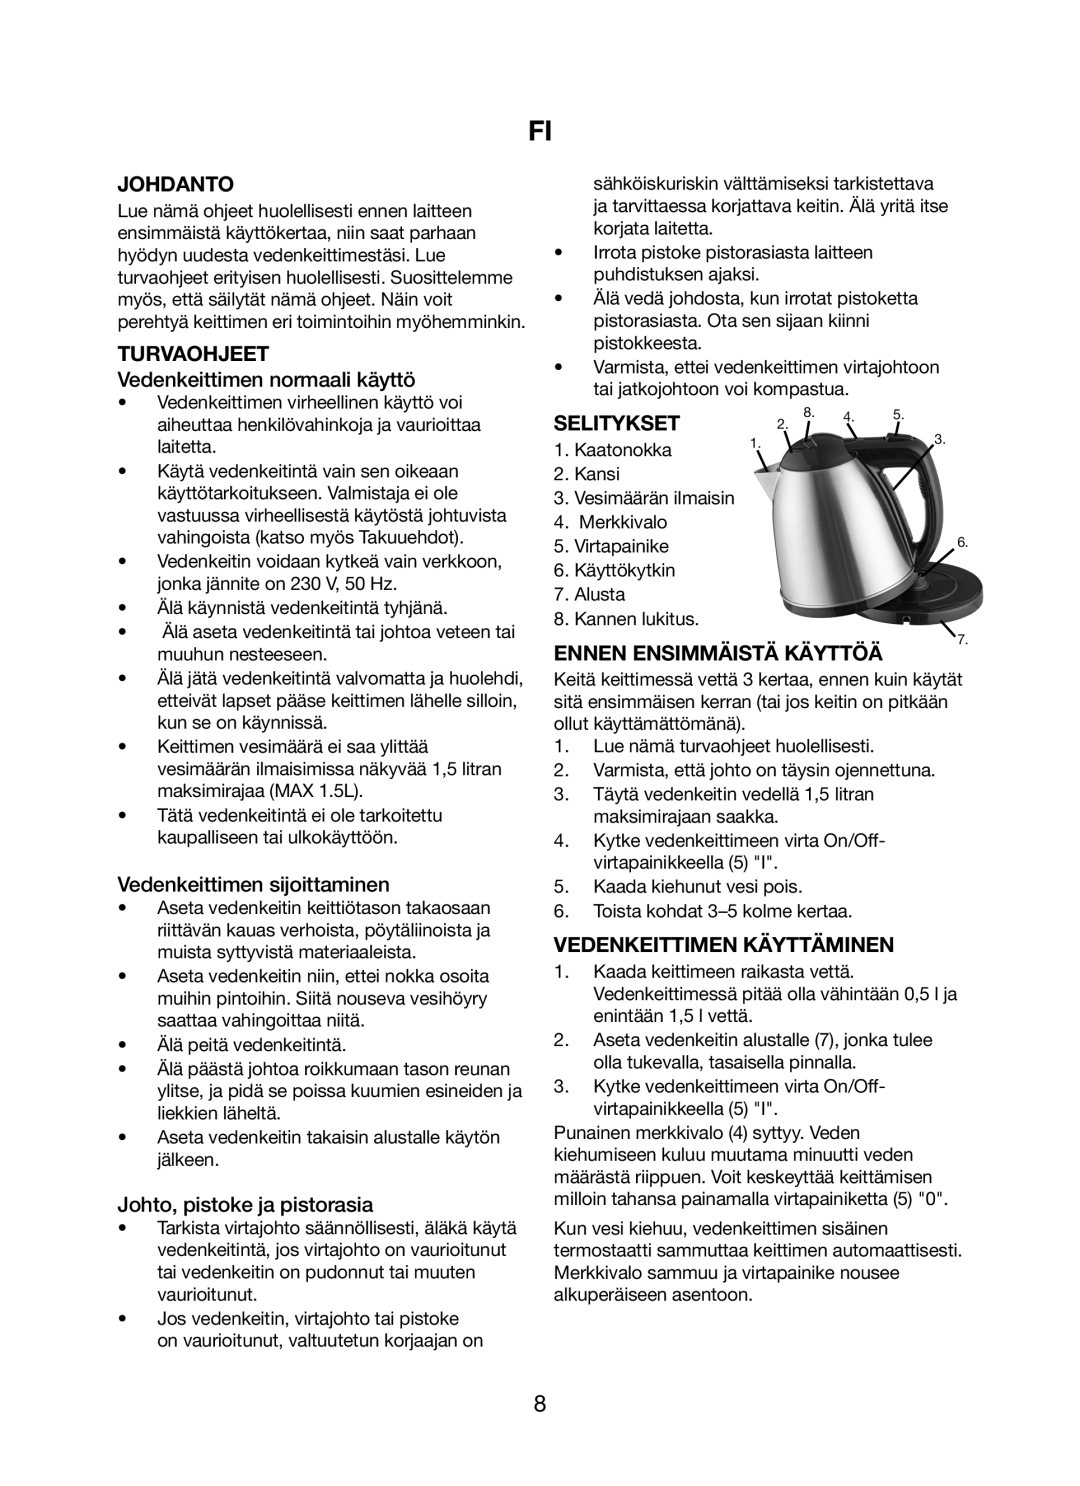 Melissa 245-035 manual Johdanto, Turvaohjeet, Selitykset, Ennen Ensimmäistä Käyttöä, Vedenkeittimen Käyttäminen 